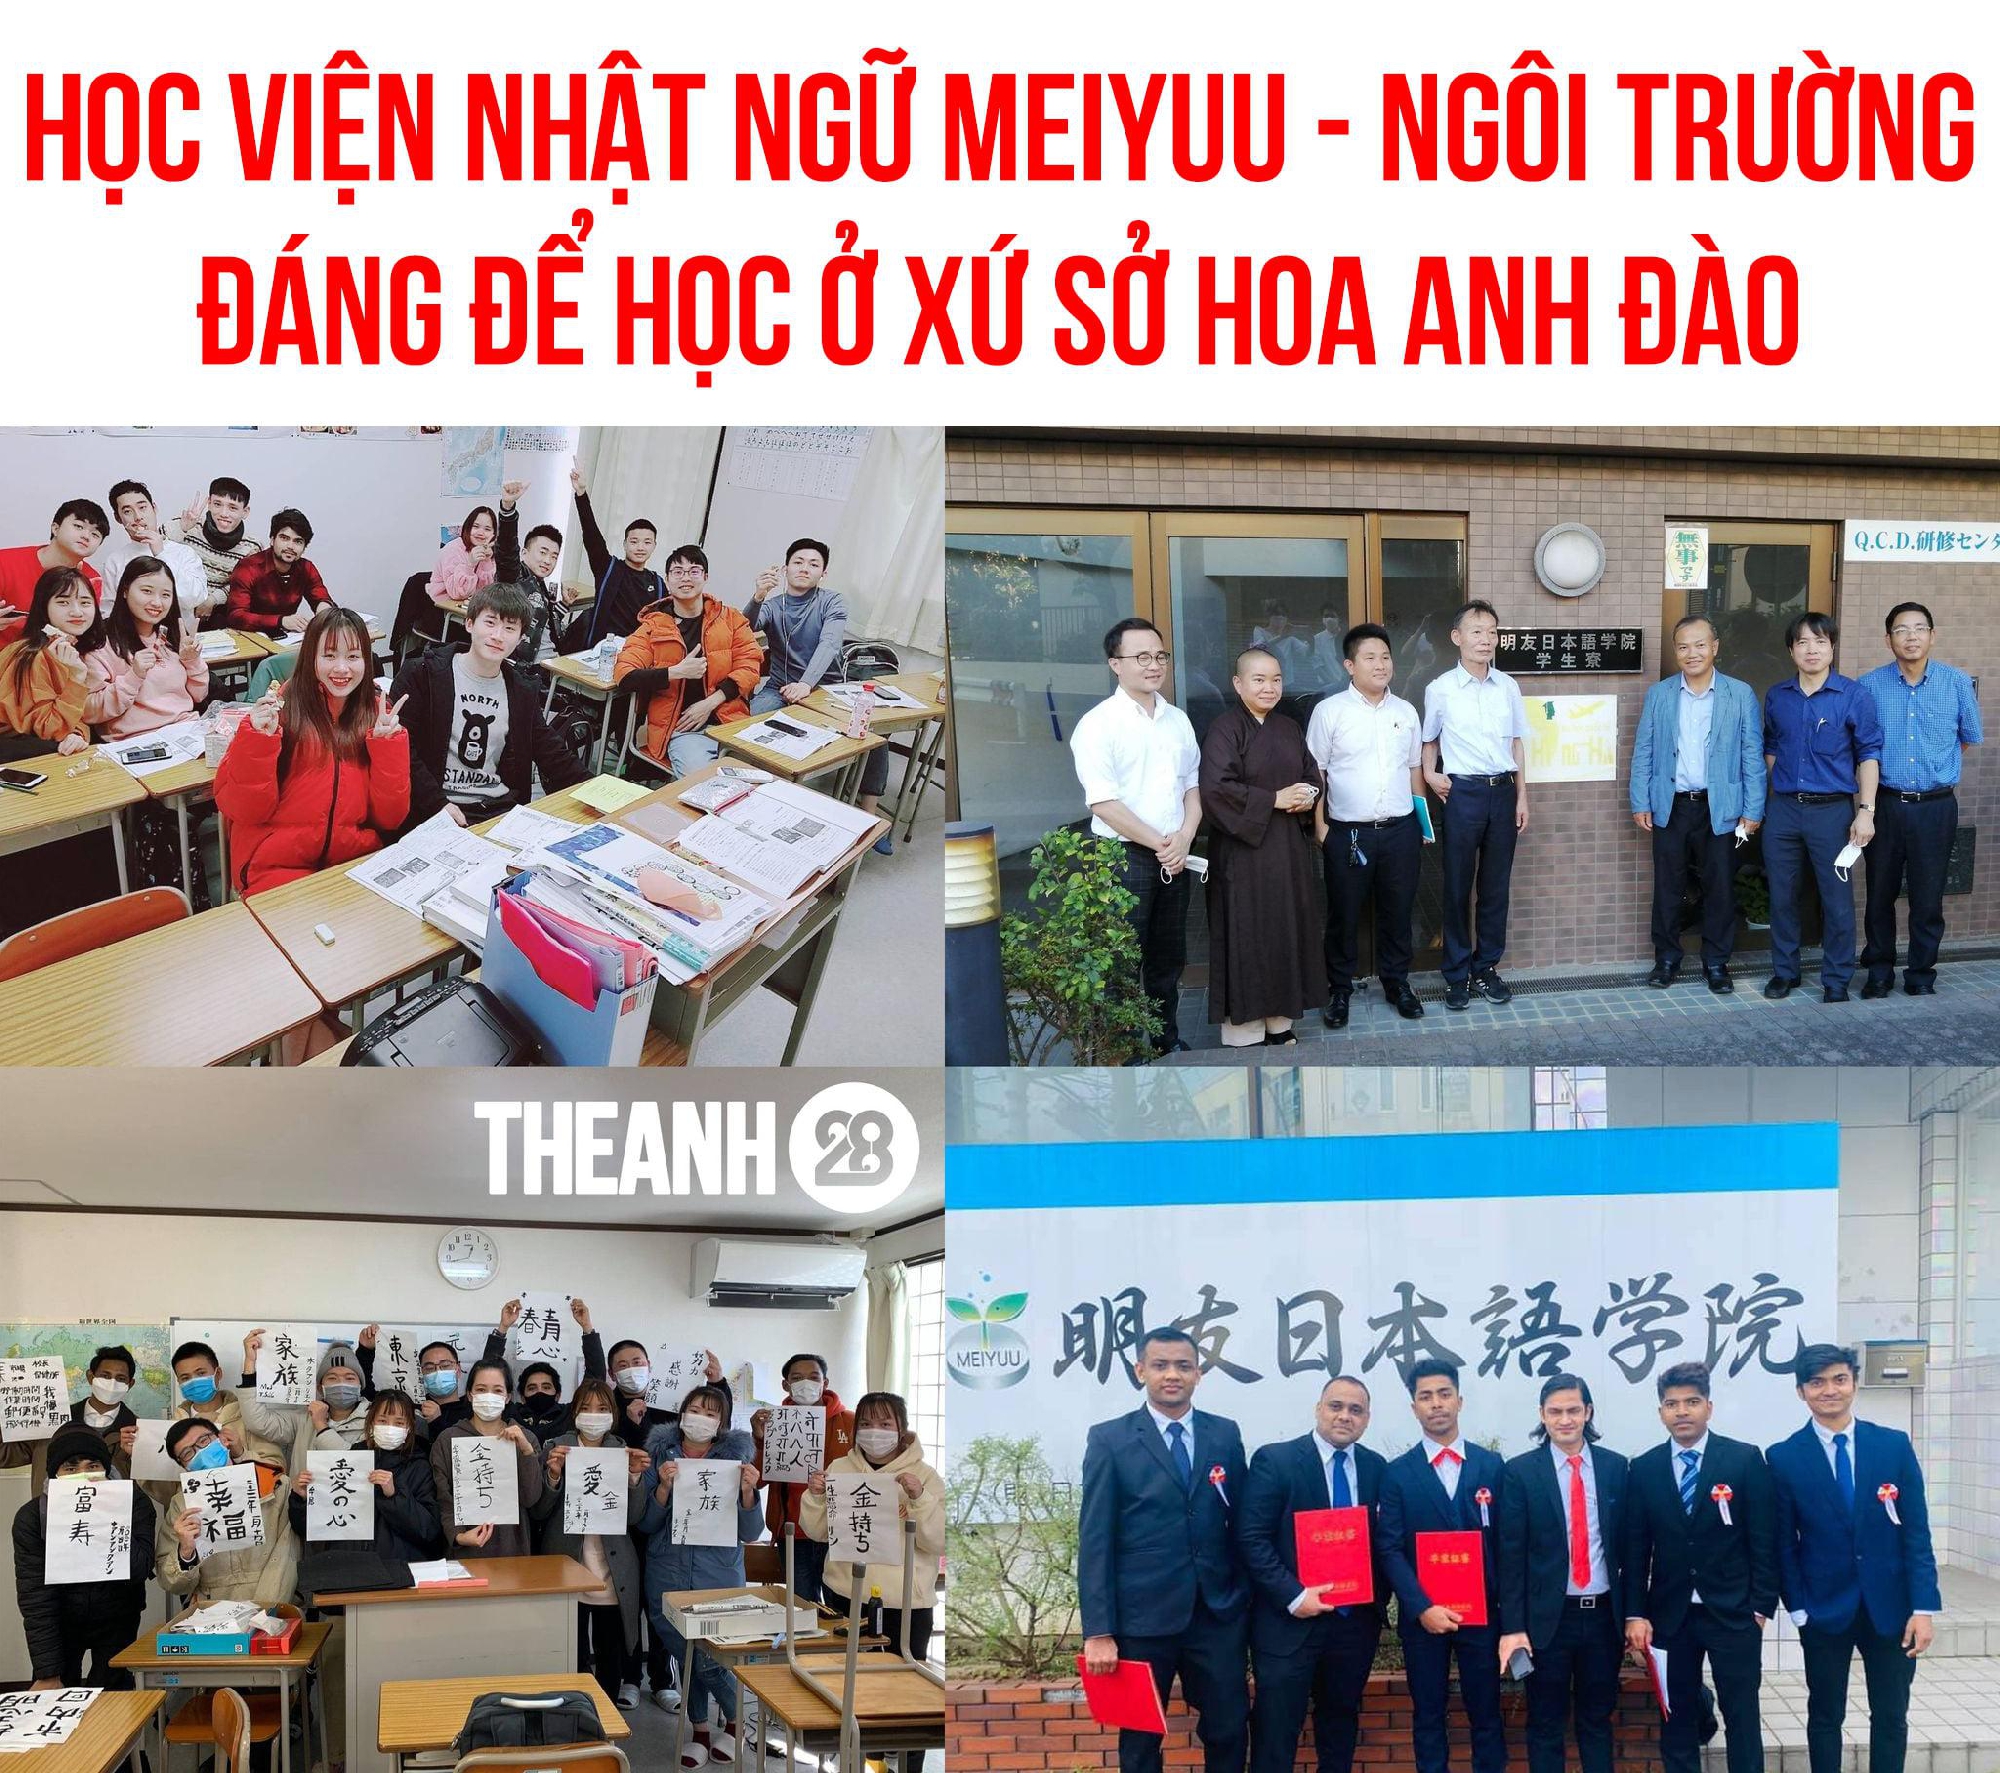 ベトナムの　Theanh28 entertainment に明友日本語学院が紹介されました。